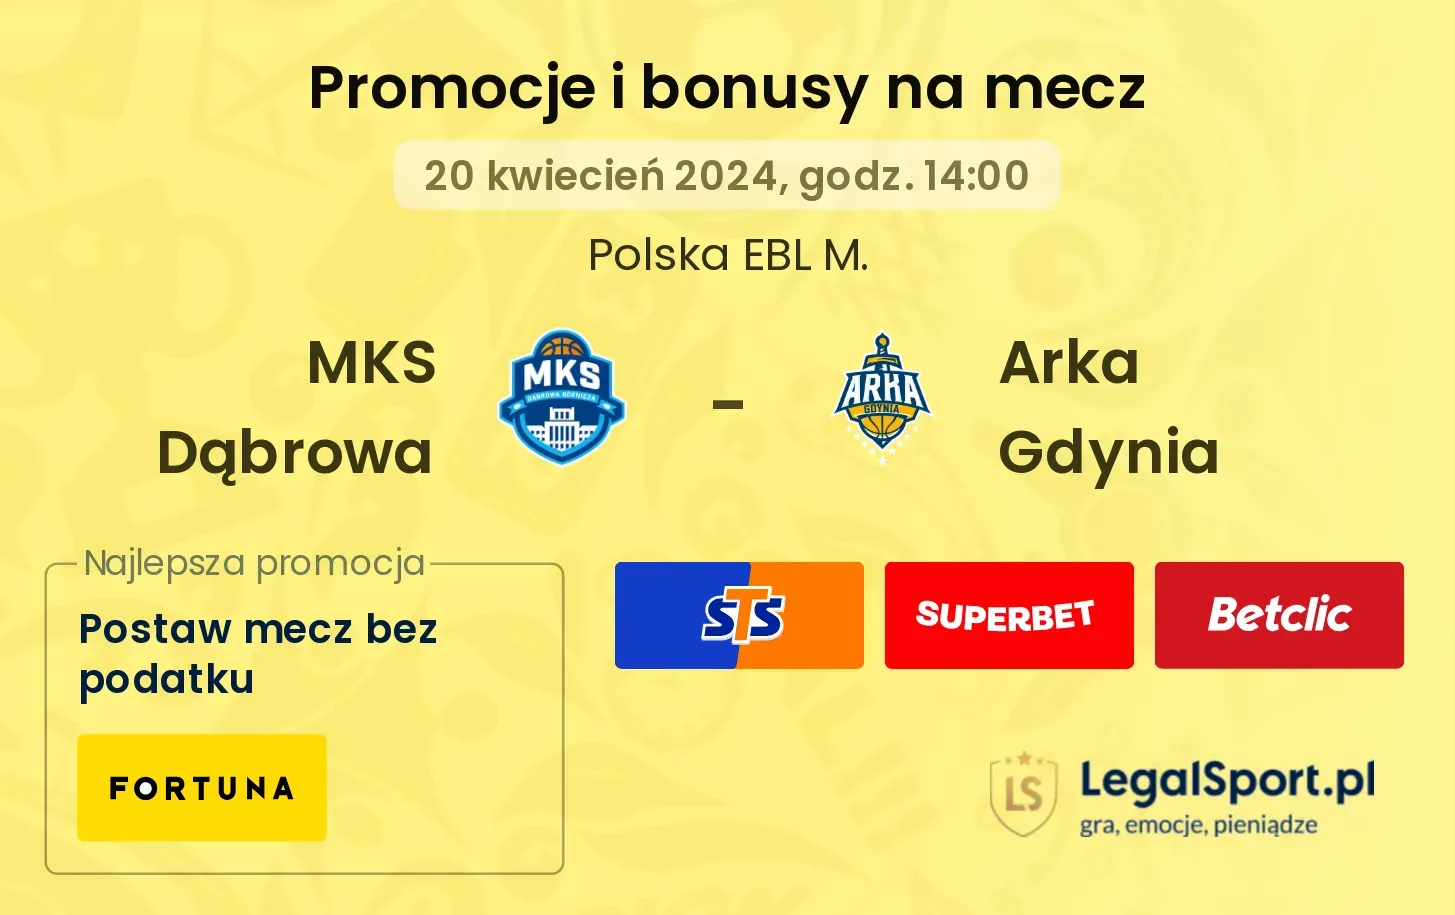 MKS Dąbrowa - Arka Gdynia promocje bonusy na mecz